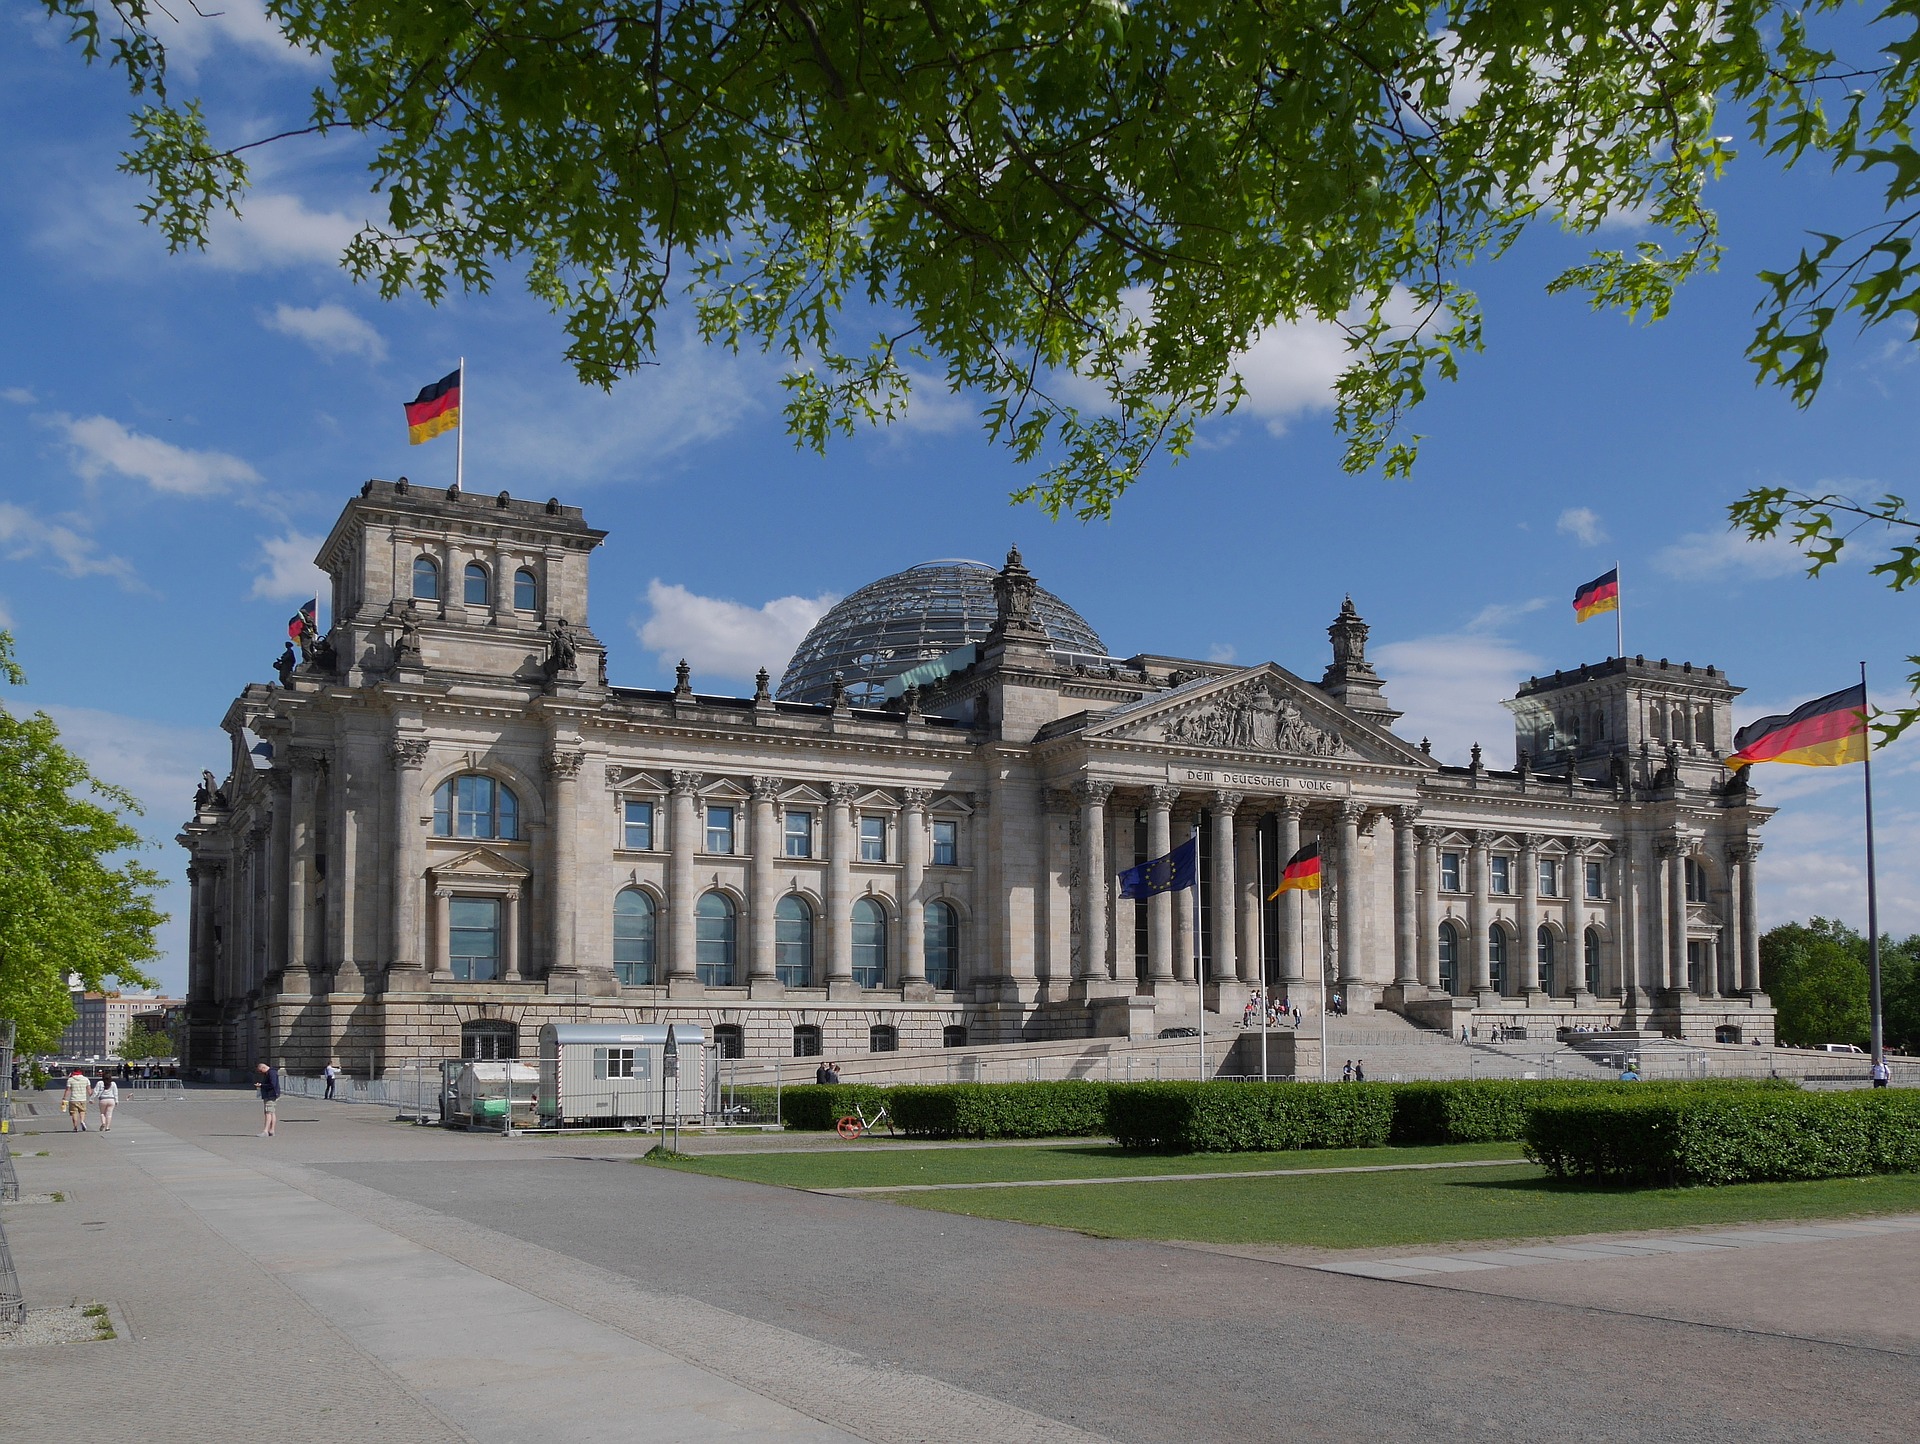 Bundestagsgebäude von außen ©pixabay